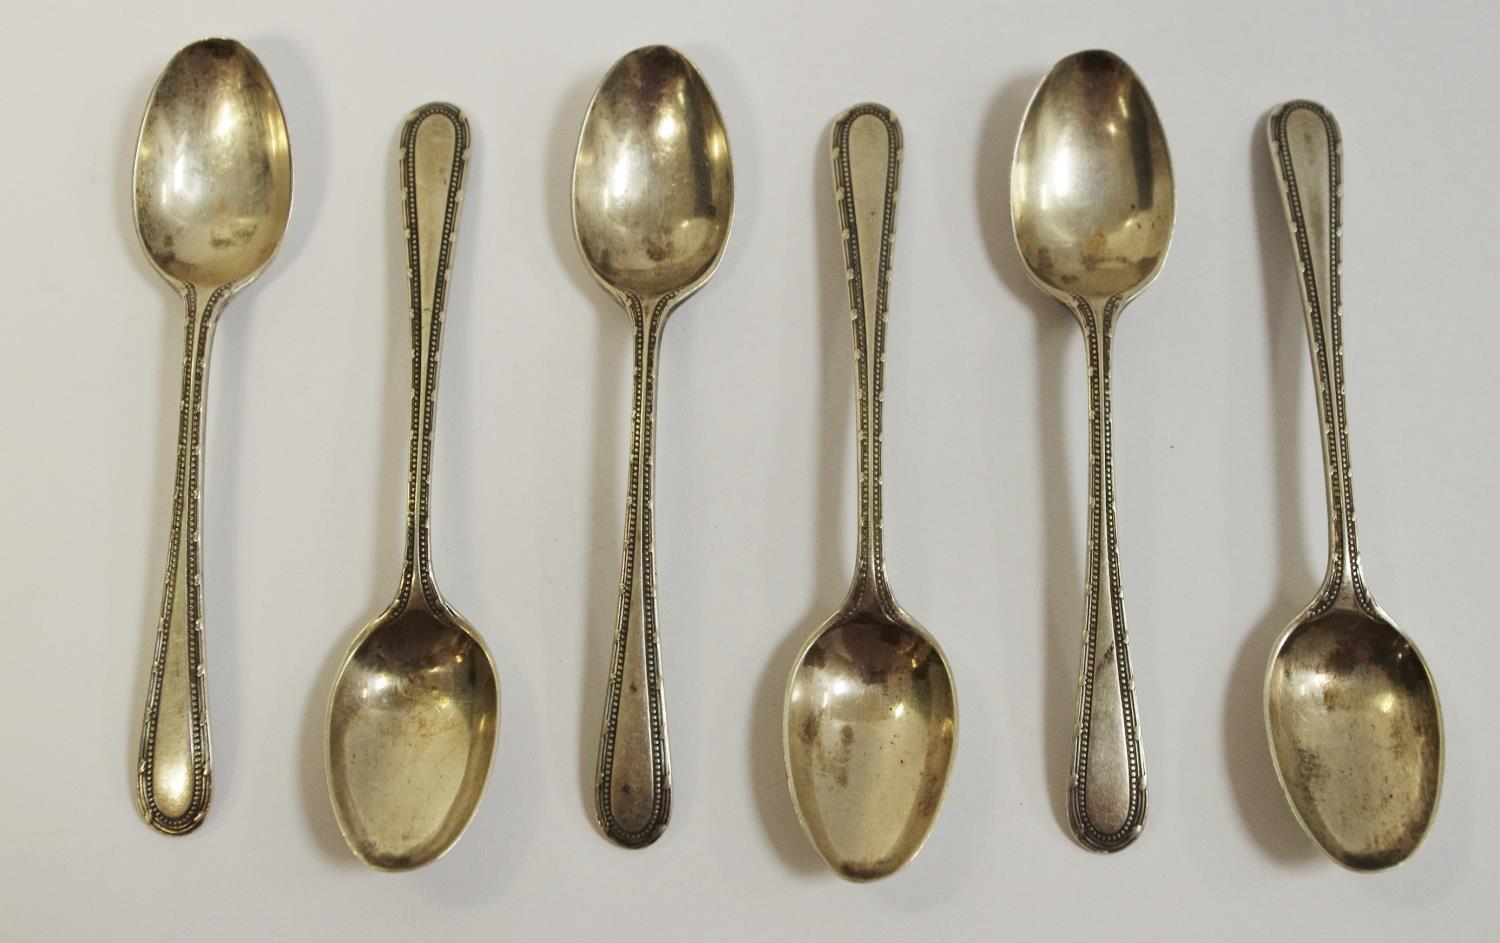 Six silver tea spoons, Sheffield 1942.